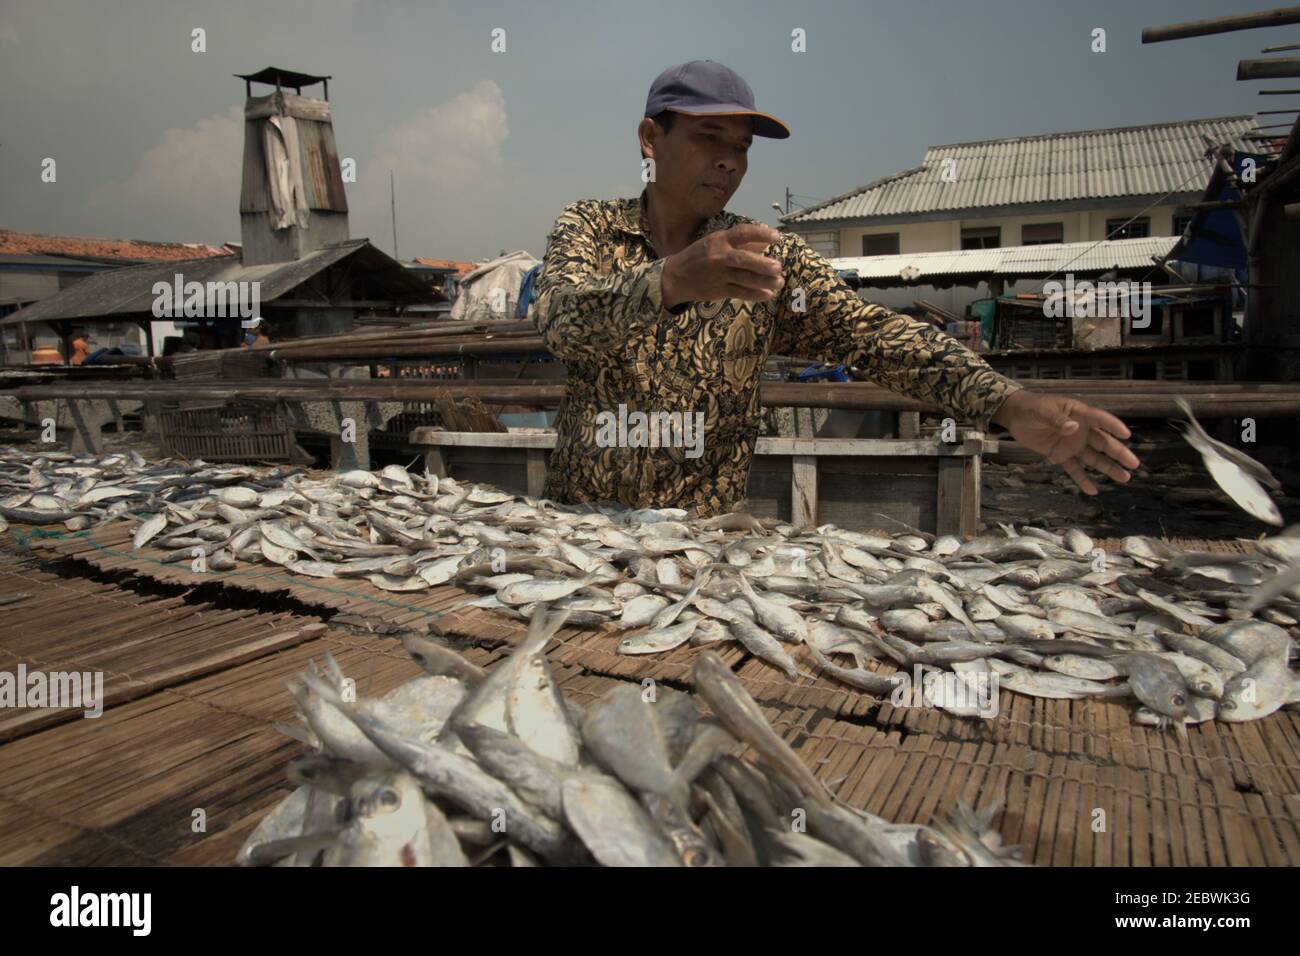 Un travailleur qui organise le séchage des poissons au soleil, dans une zone de production de poissons salés à Muara Angke, dans la zone côtière de Jakarta, en Indonésie. Banque D'Images